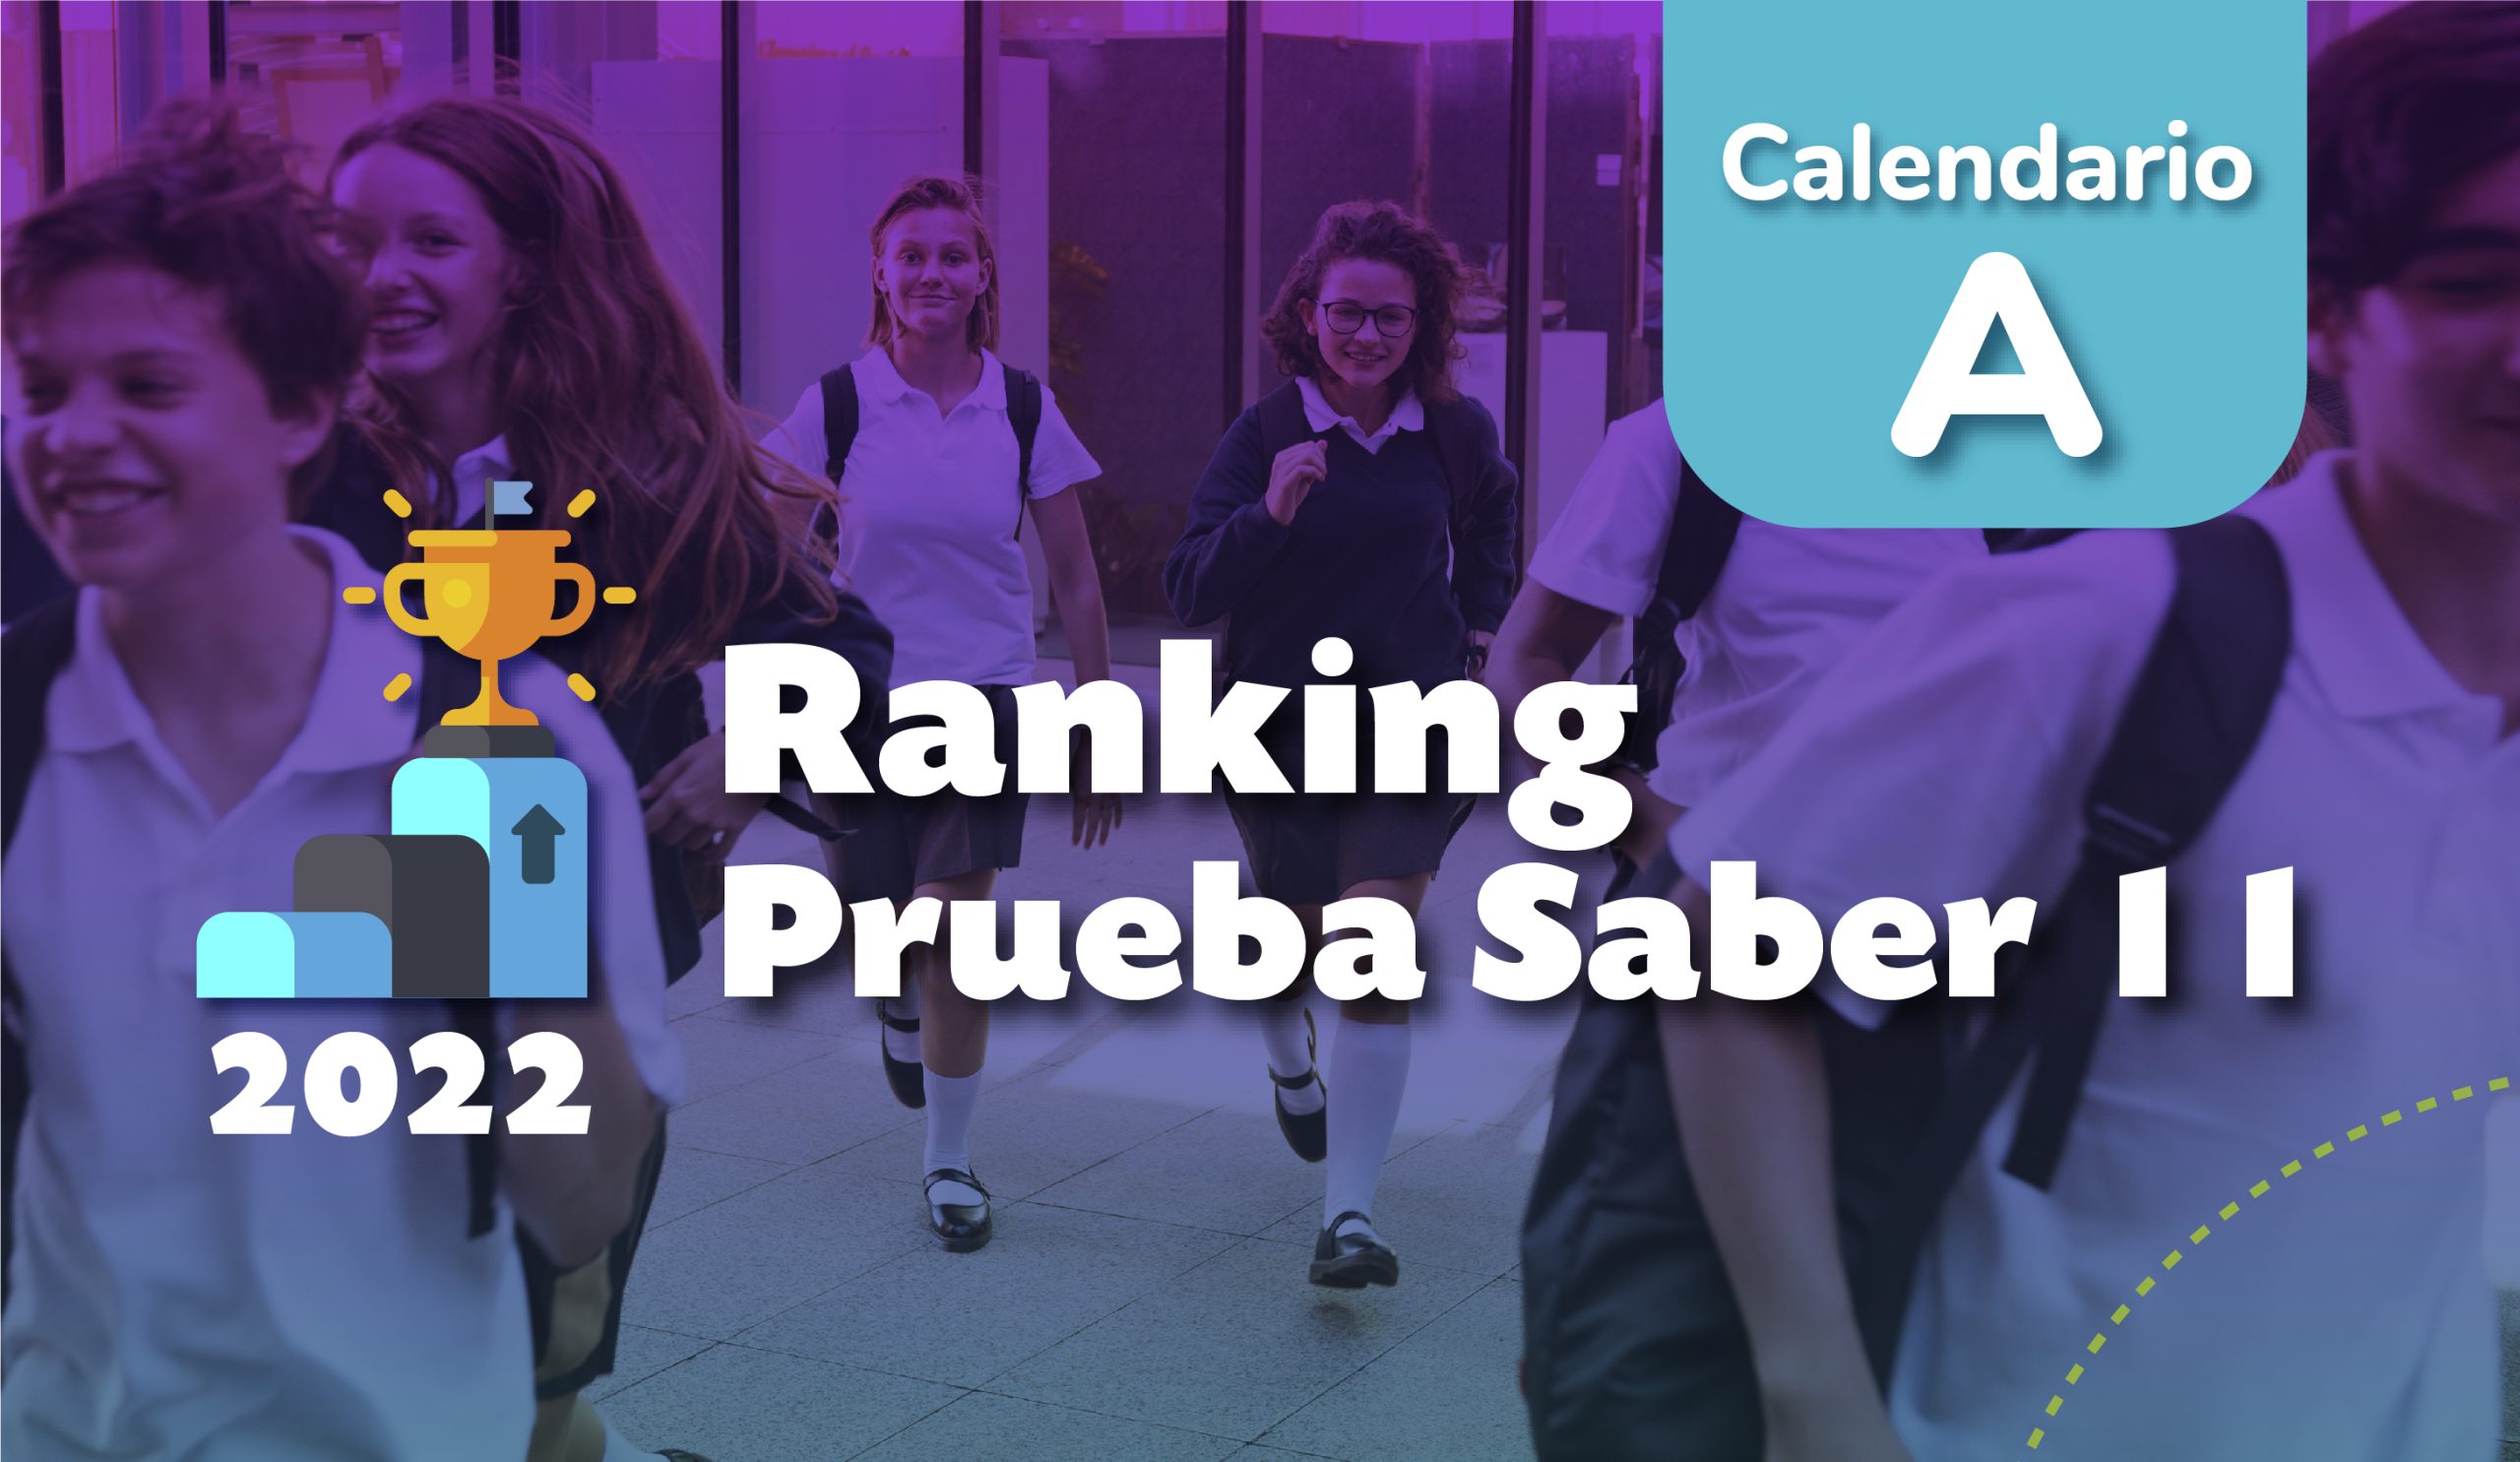 Estos son los mejores colegios del país, según los resultados de la Prueba Saber 11°, Calendario A – 2022